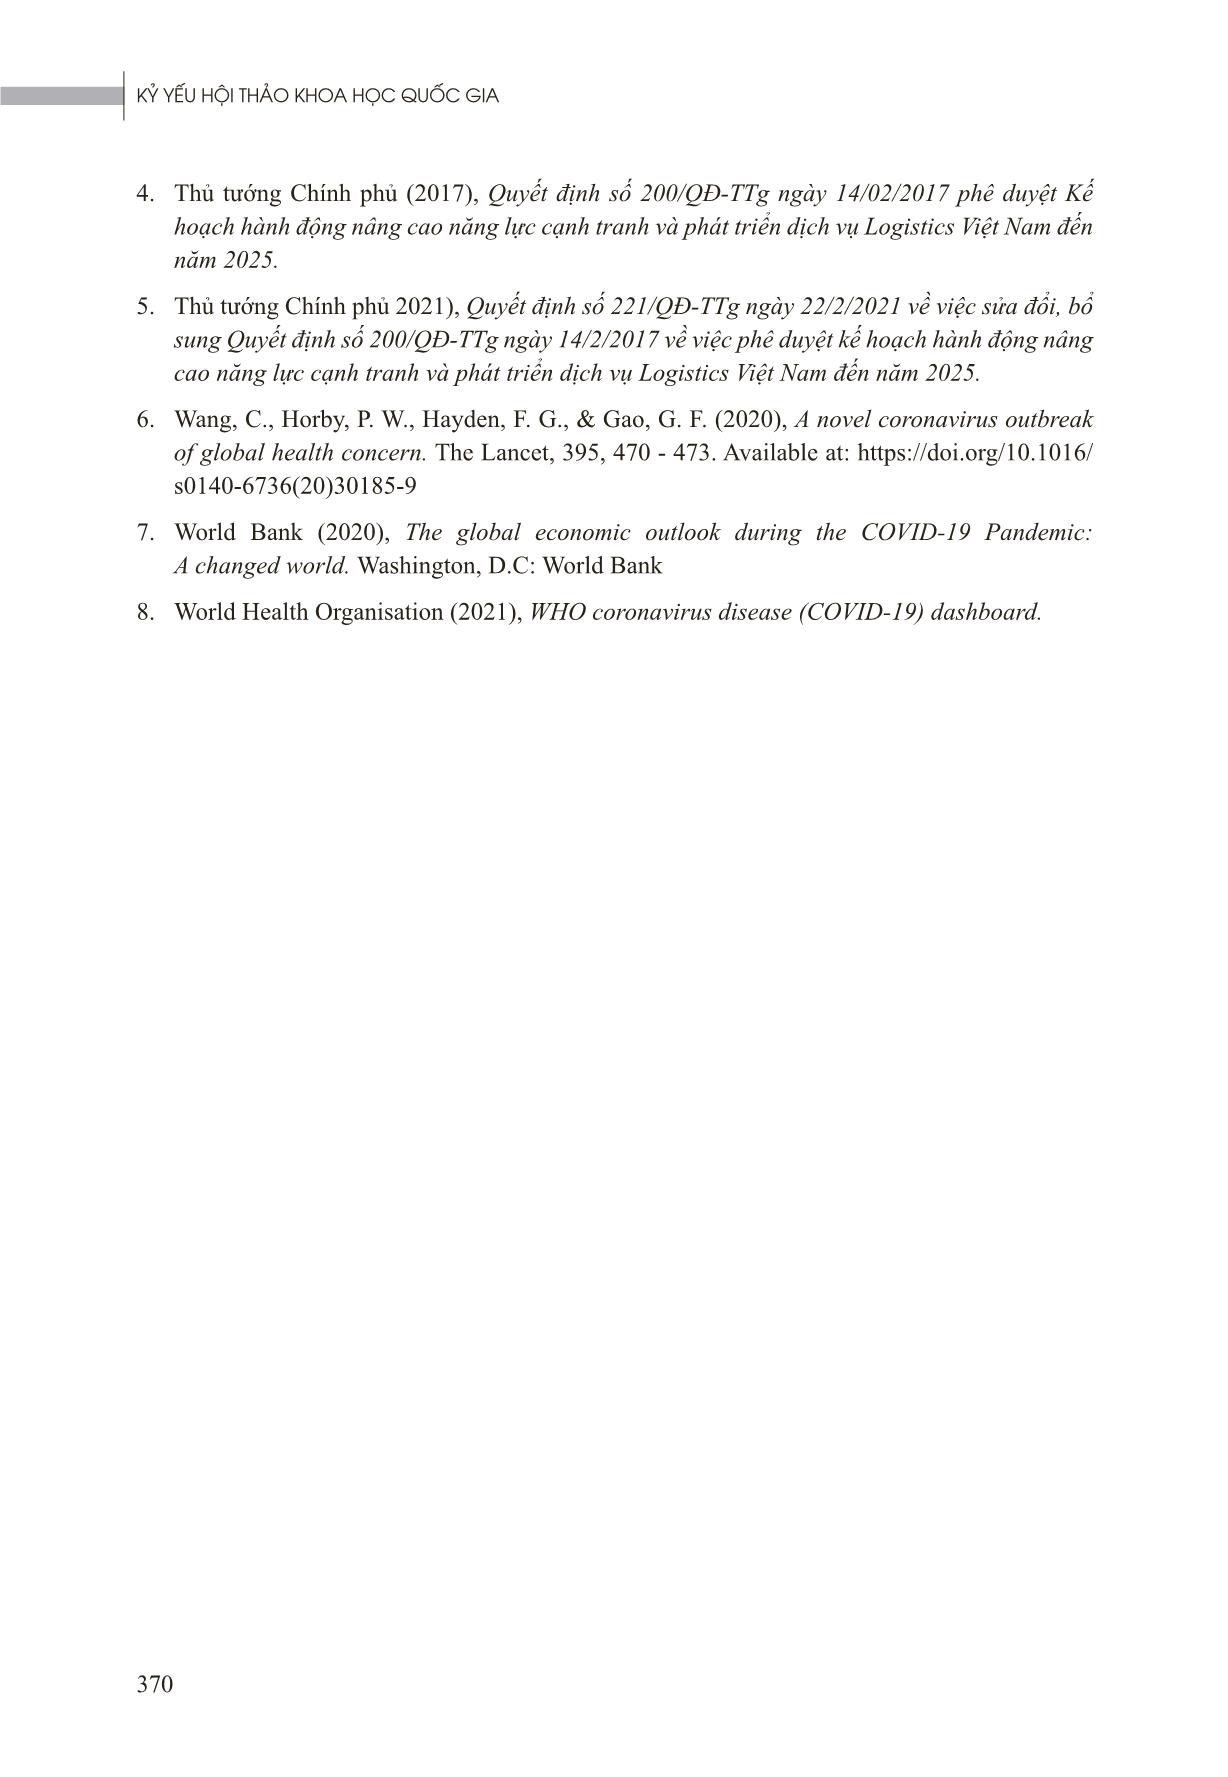 Tác động của đại dịch Covid-19 đến ngành Dịch vụ Logistics Việt Nam trang 9